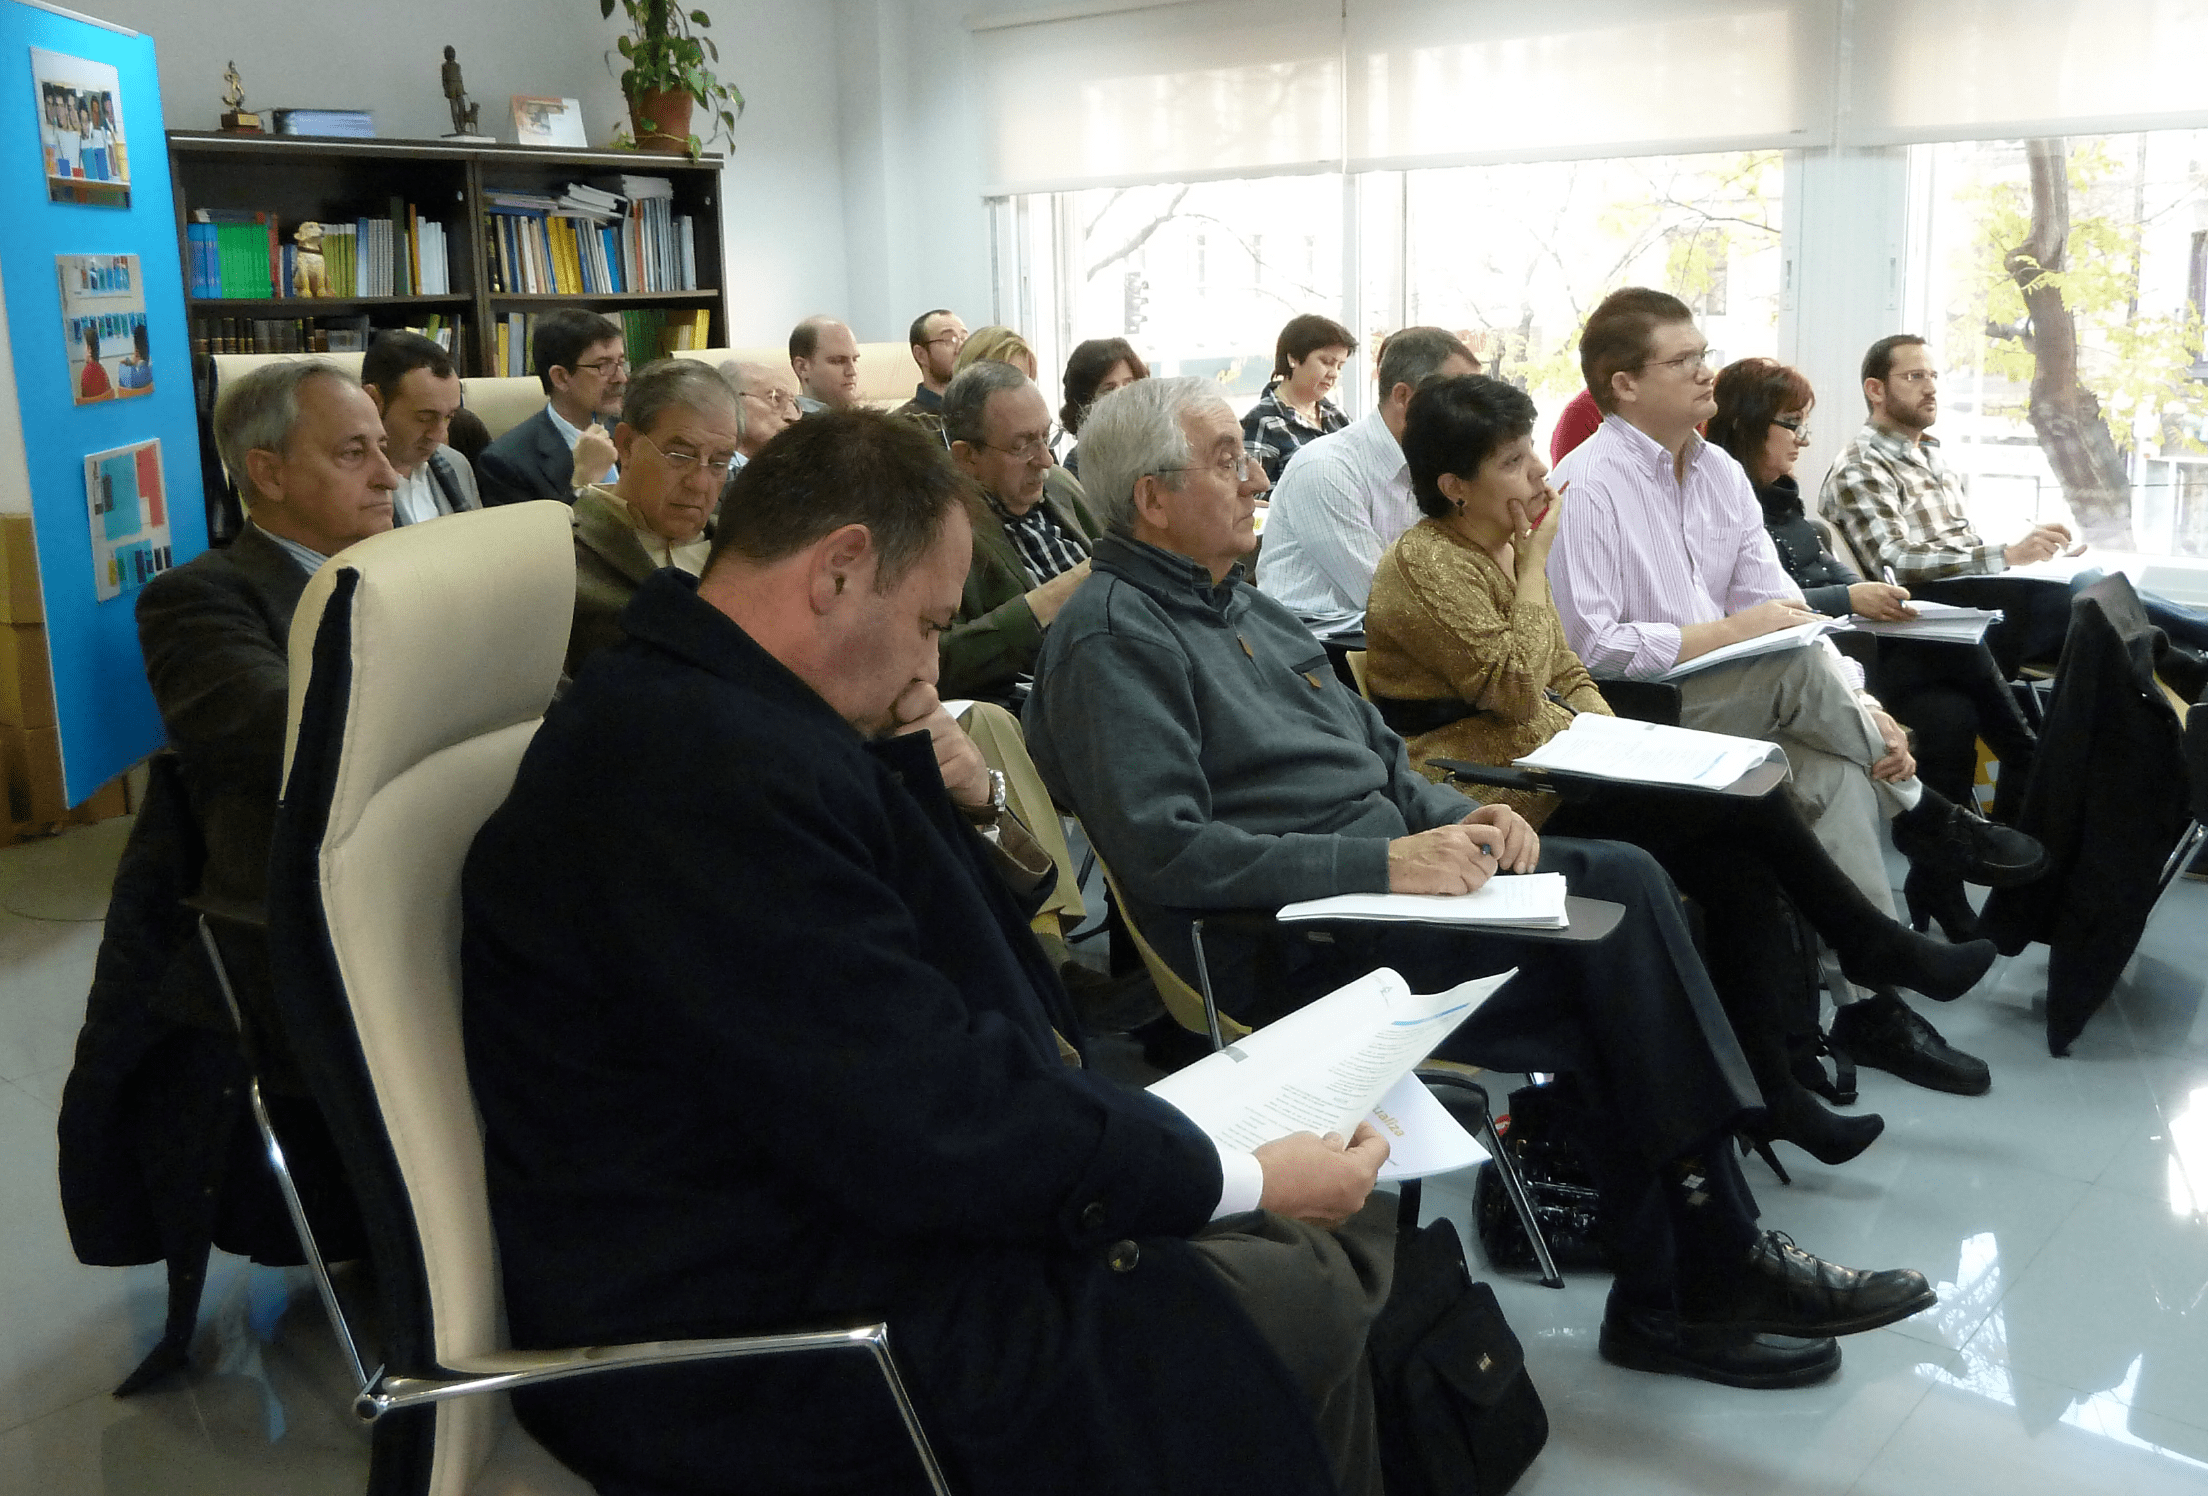 Un grupo de personas sentadas asistiendo a una conferencia